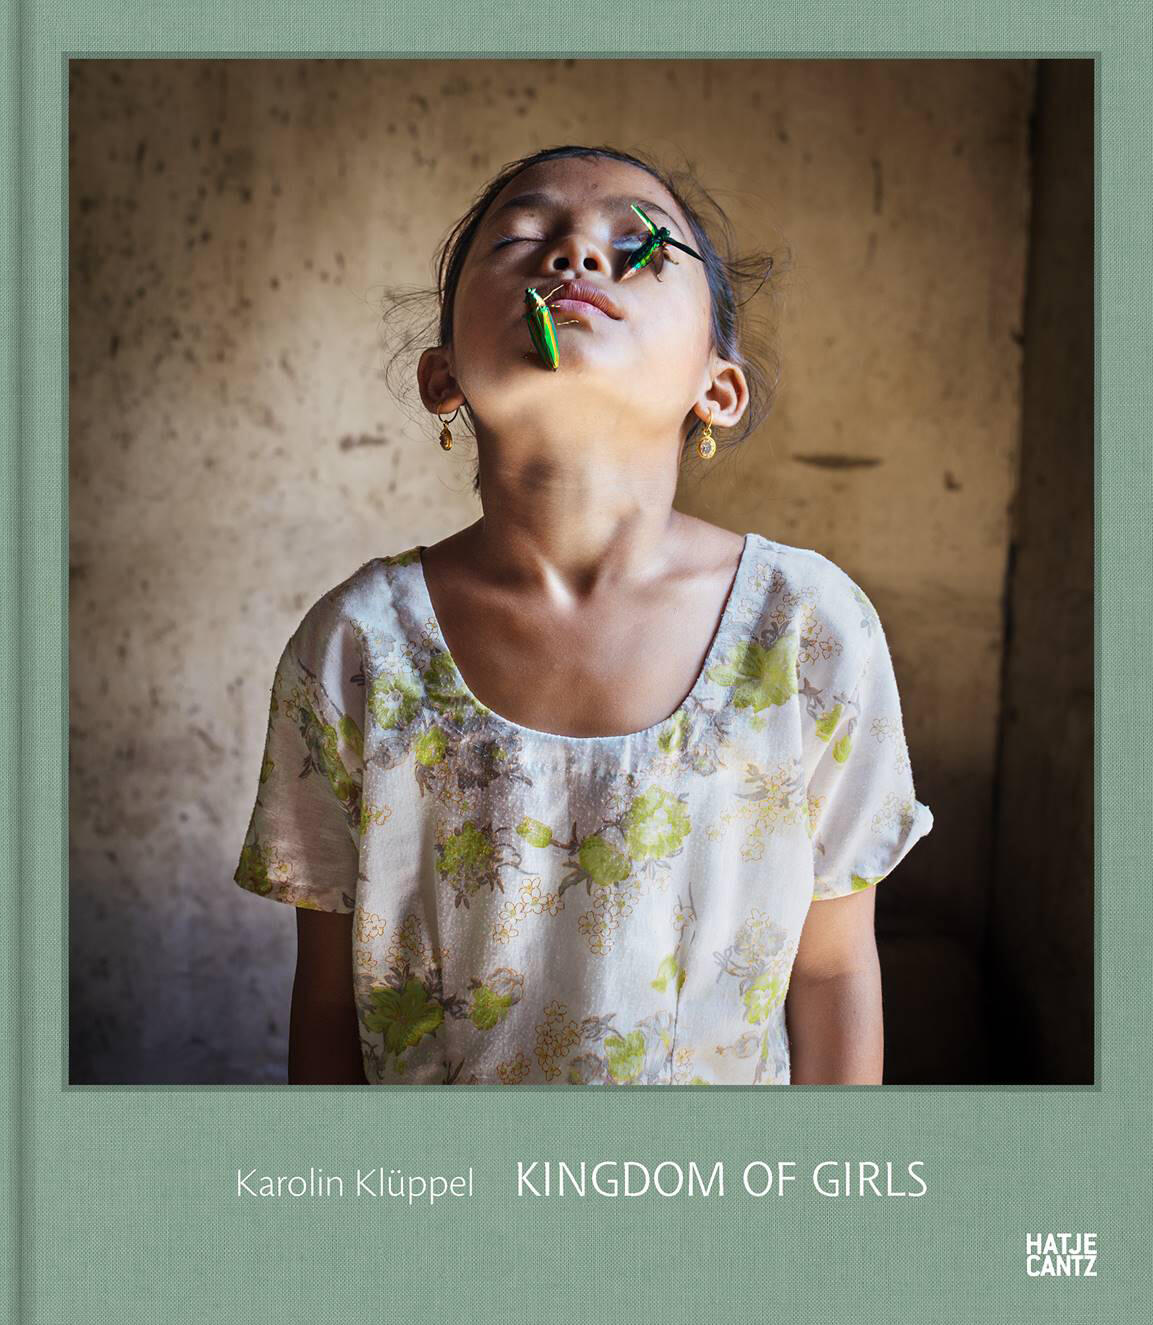 kingdom of girls, karolin klueppel, kunstbuch bildband fotobuch